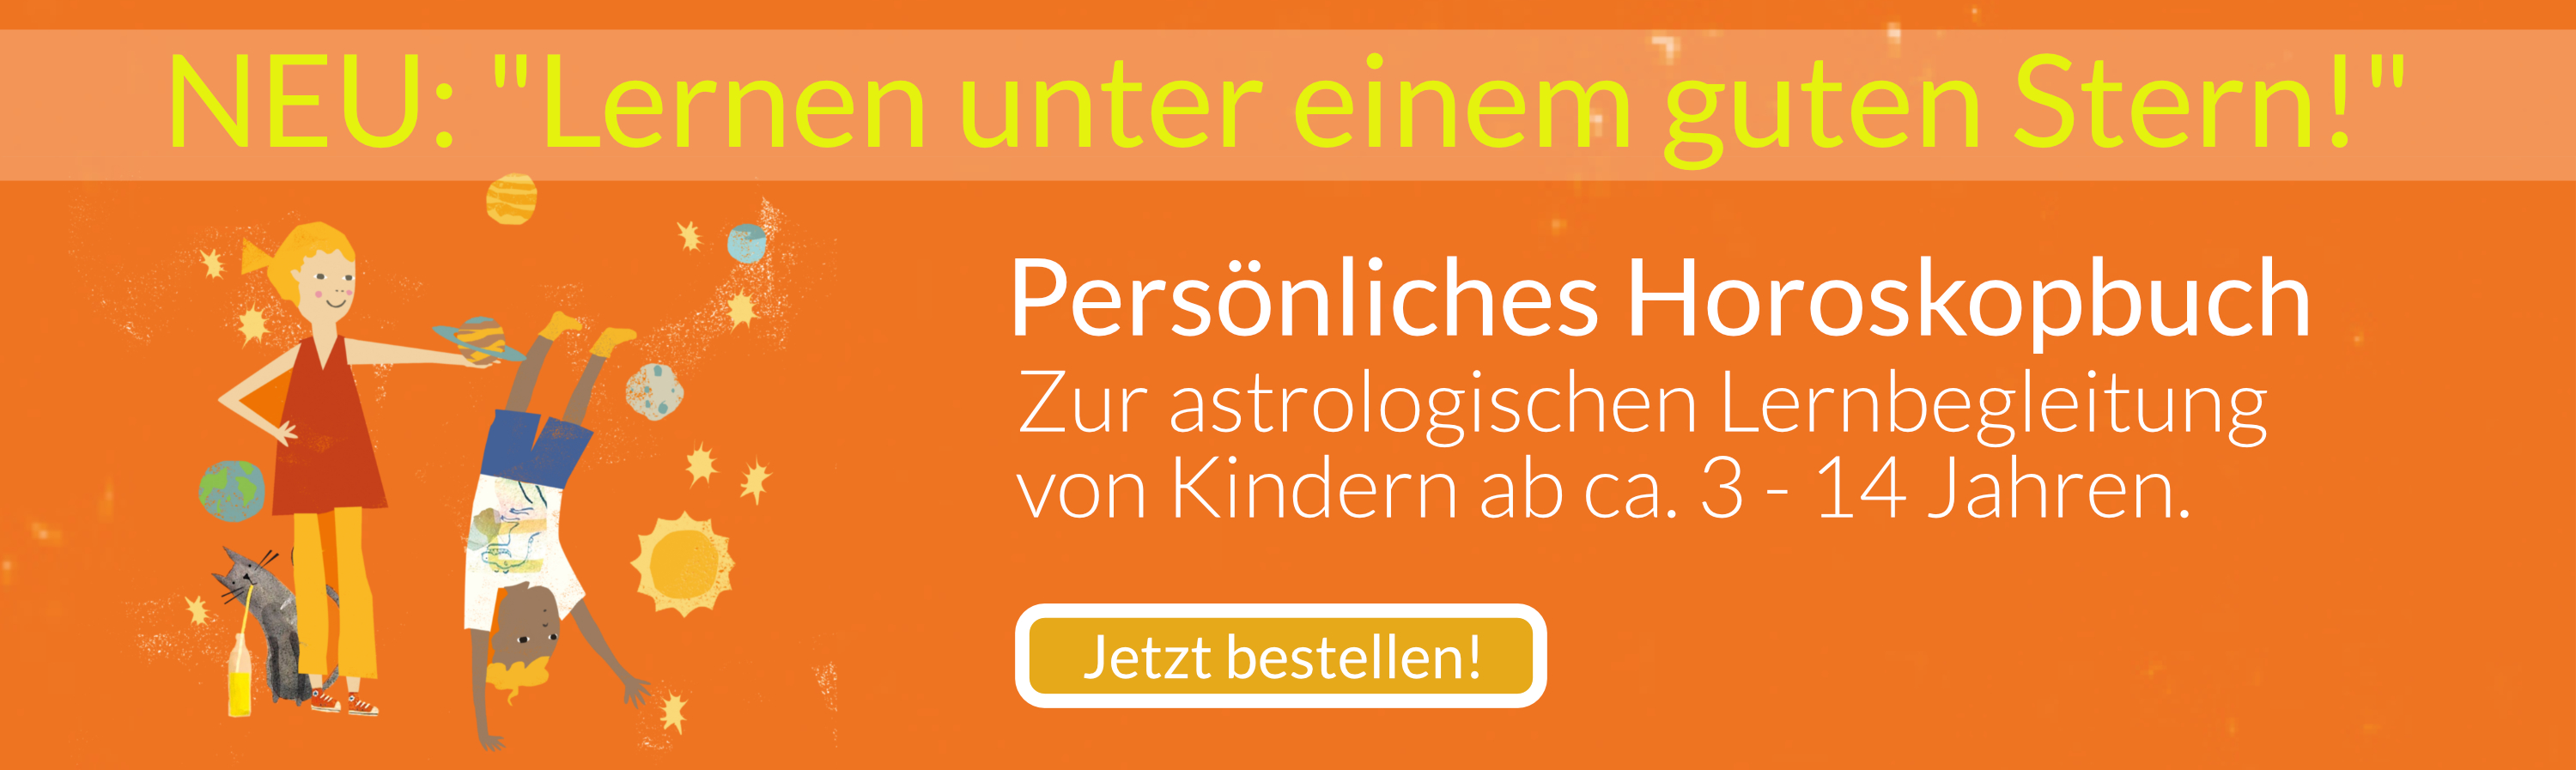 Horoskopbuch: Lernen unter einem guten Stern! - Jetzt bestellen!